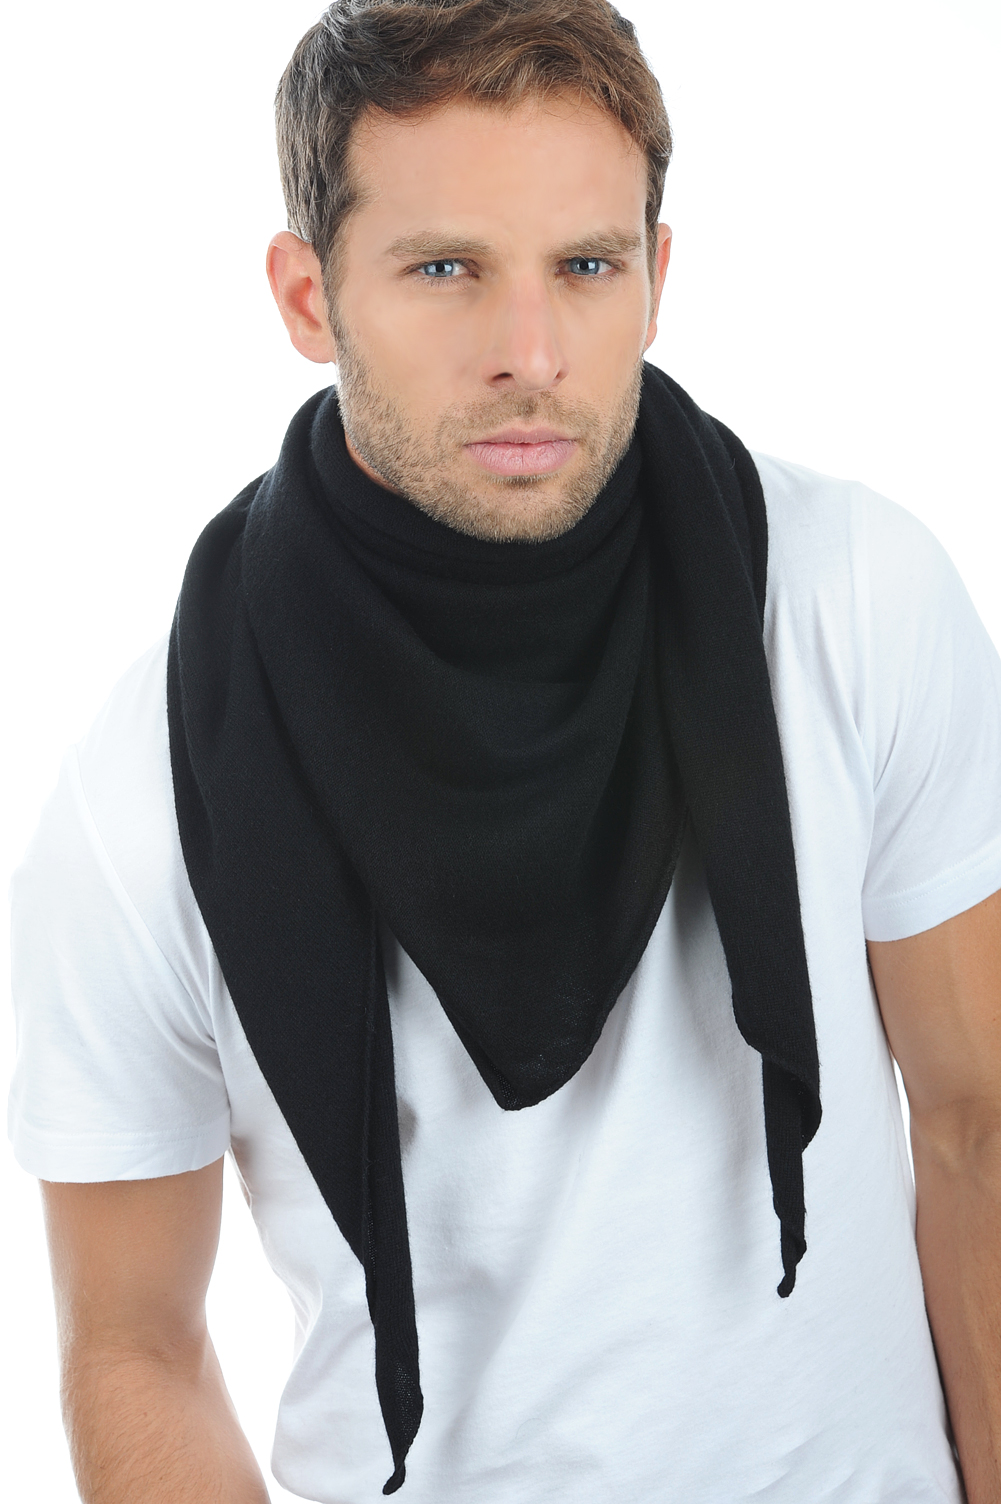 Cashmere uomo sciarpe foulard argan nero taglia unica